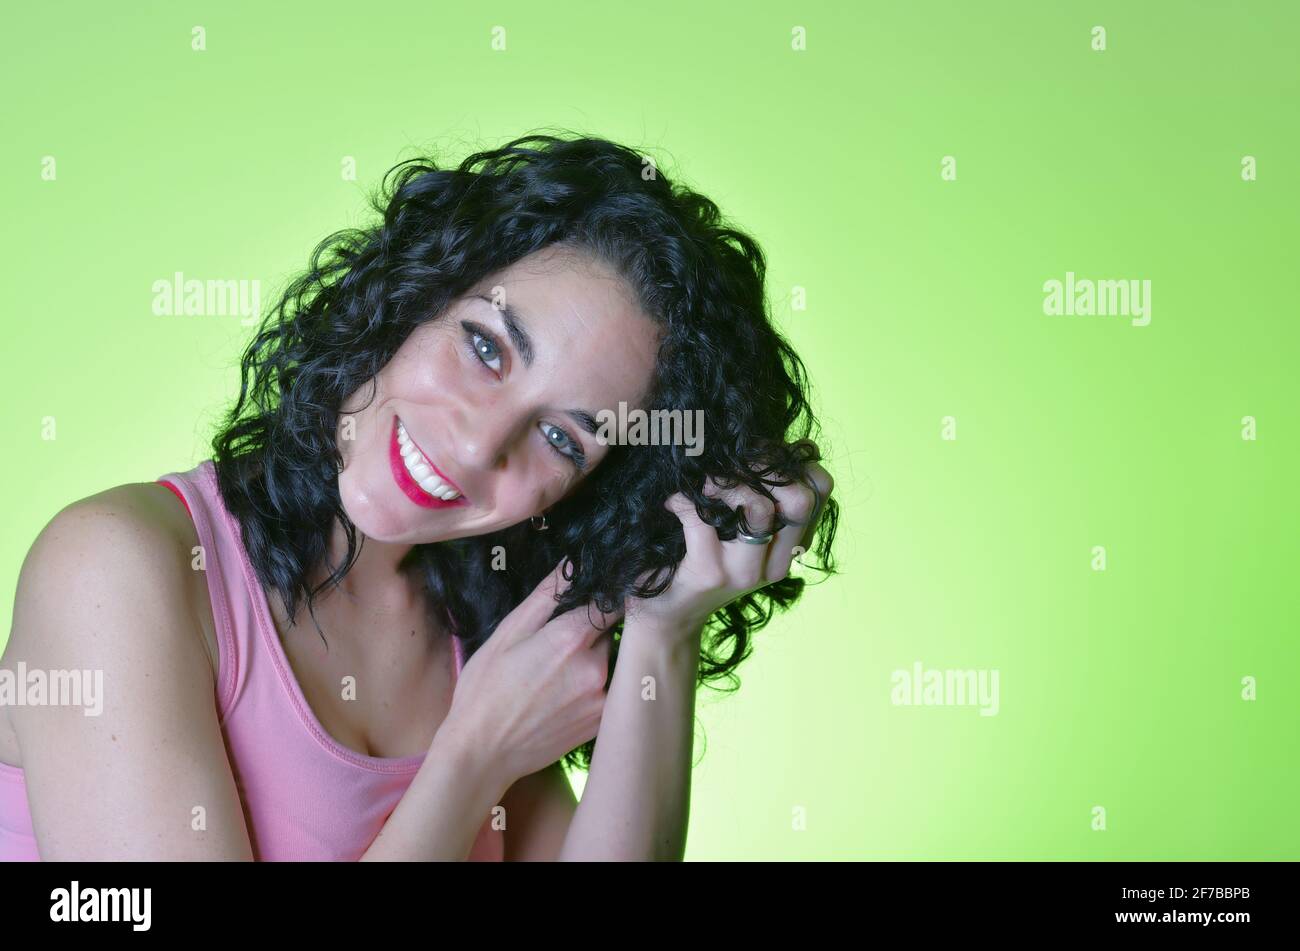 Junge Frau mit lockigen schwarzen Haaren und grünen Augen, die sich um ihr lockiges Haar kümmert und der lockigen Mädchenmethode folgt. Haarpflegekonzept. Grüner Backgroun Stockfoto